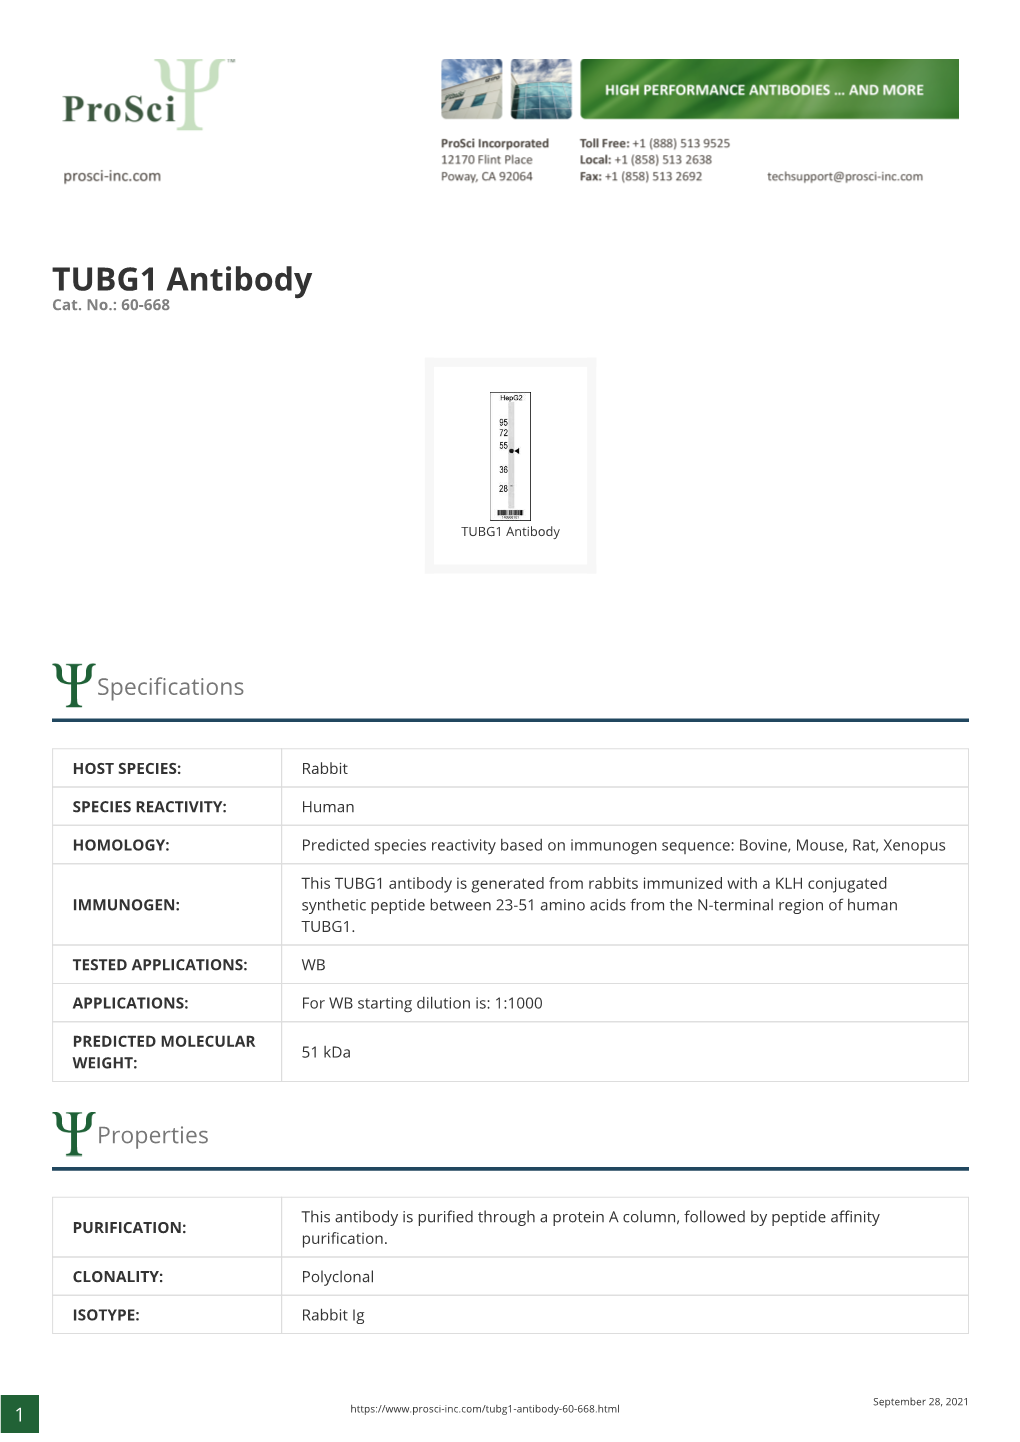 TUBG1 Antibody Cat